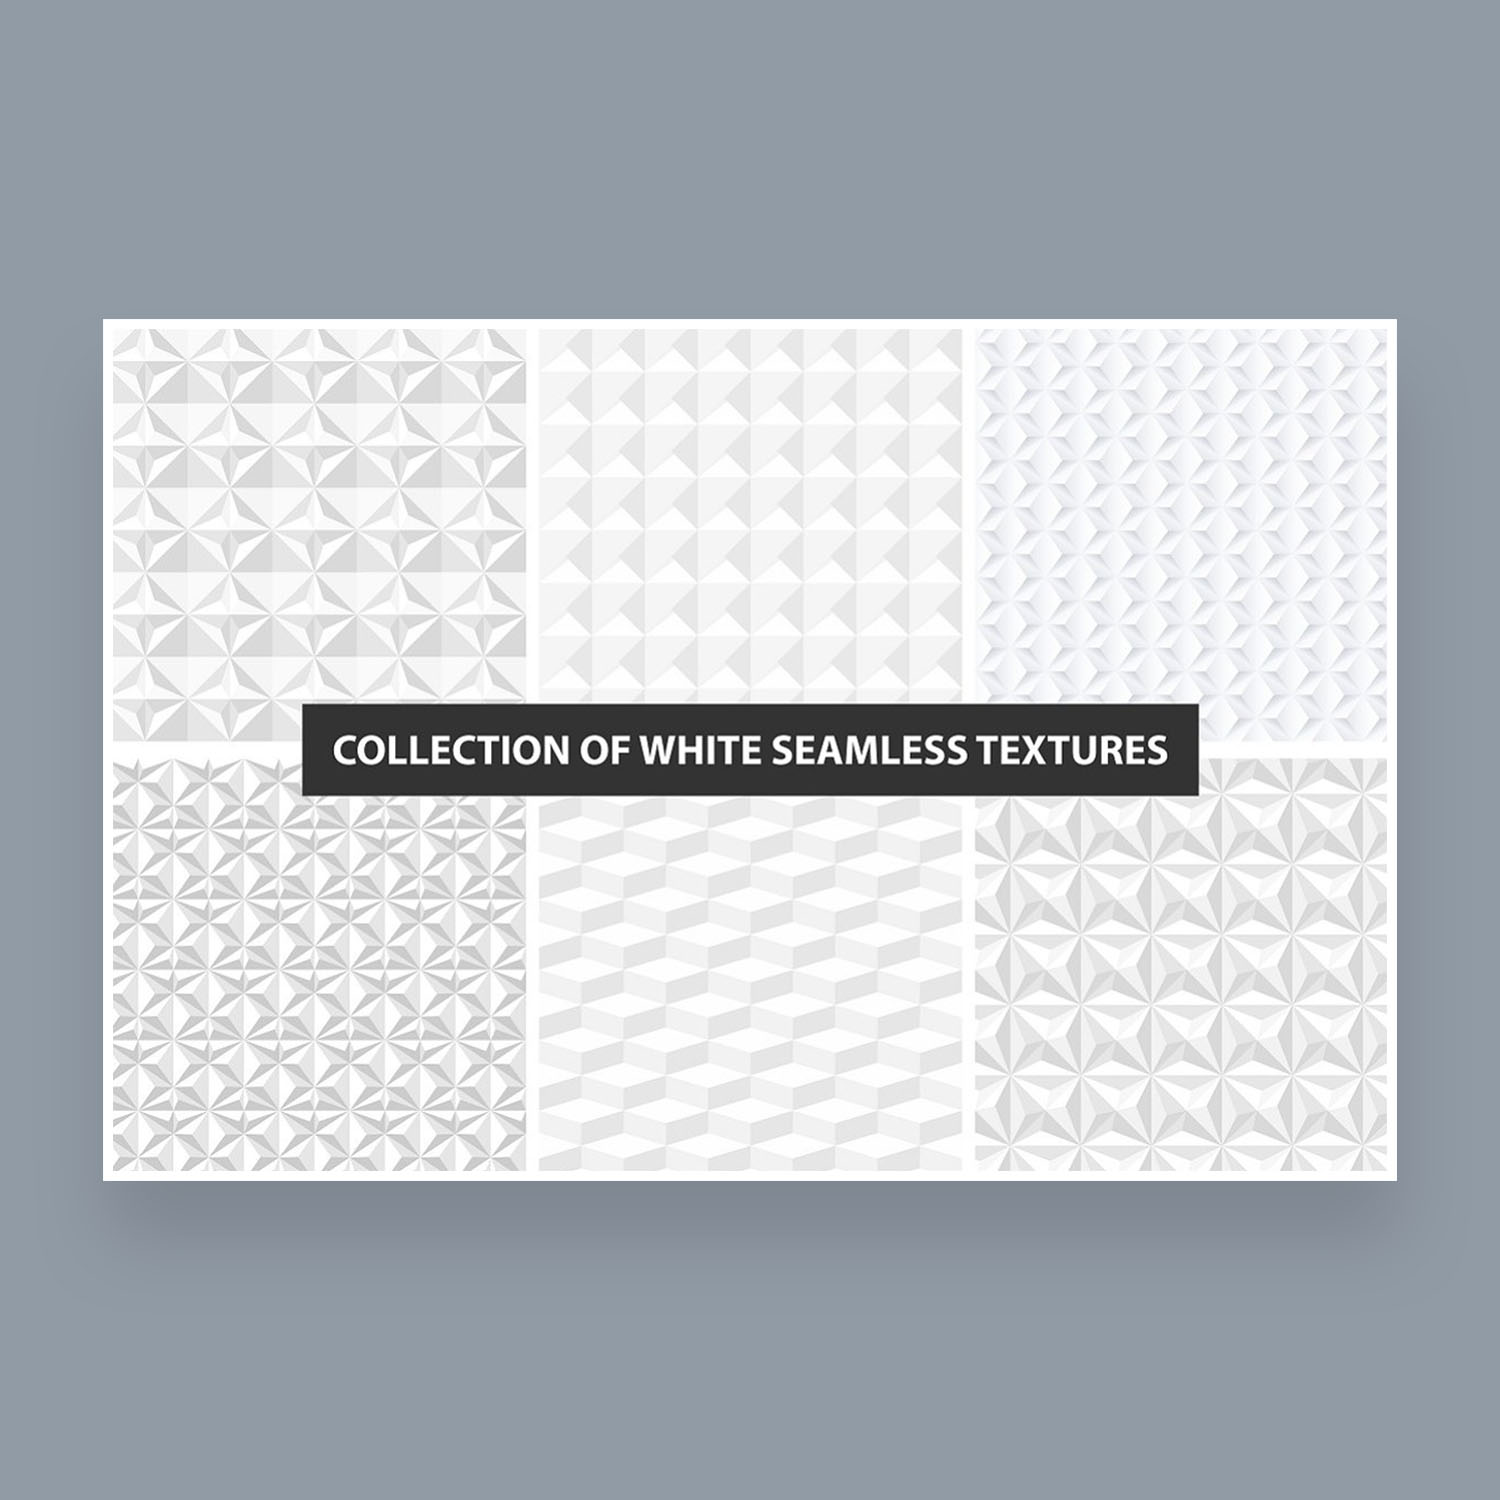 White decorative seamless textures.